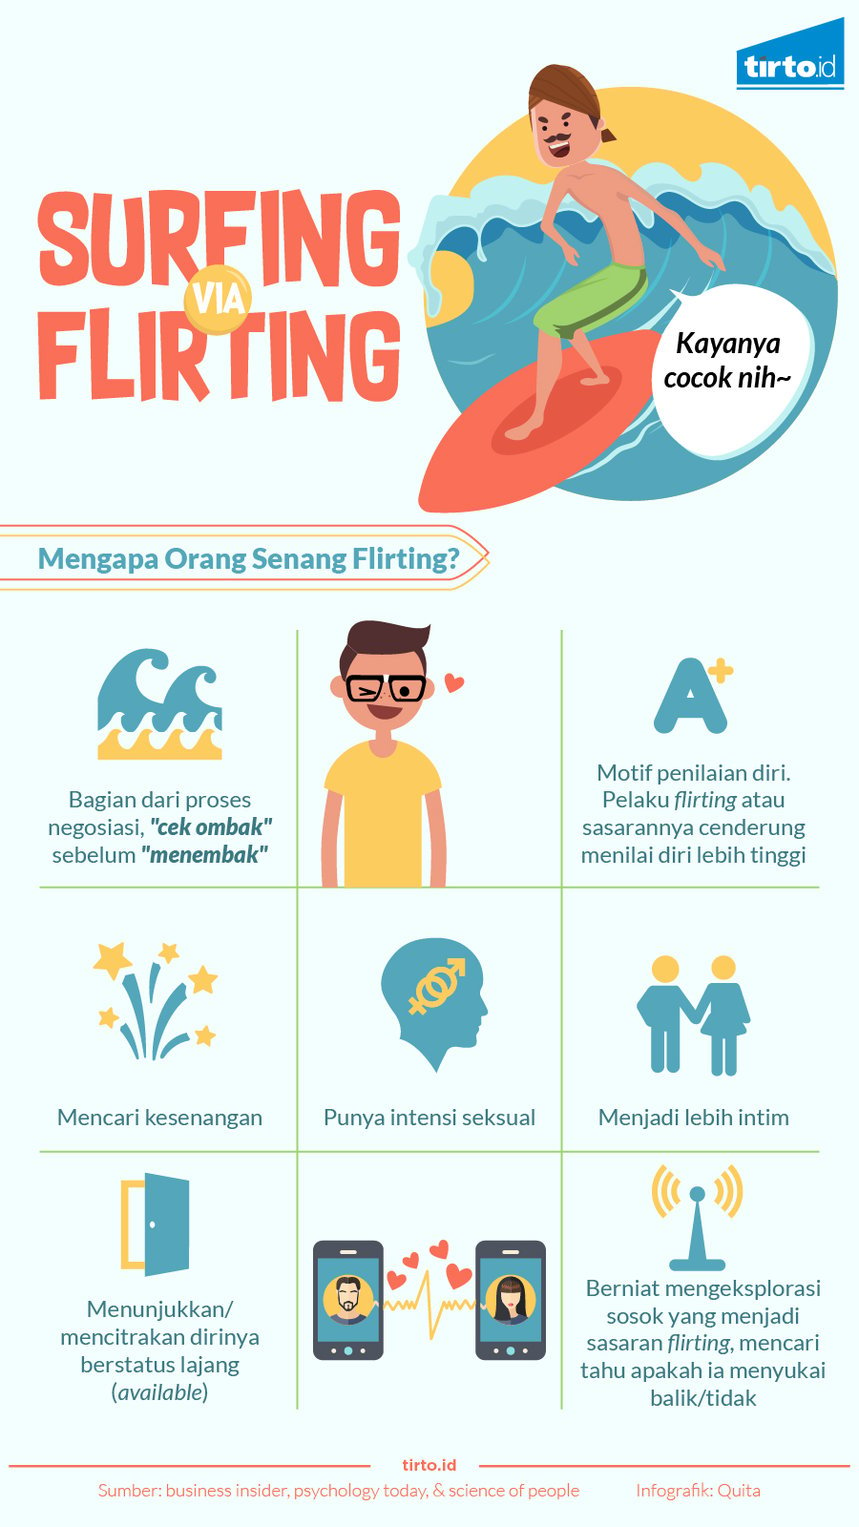 Infografik Surfing via flirting